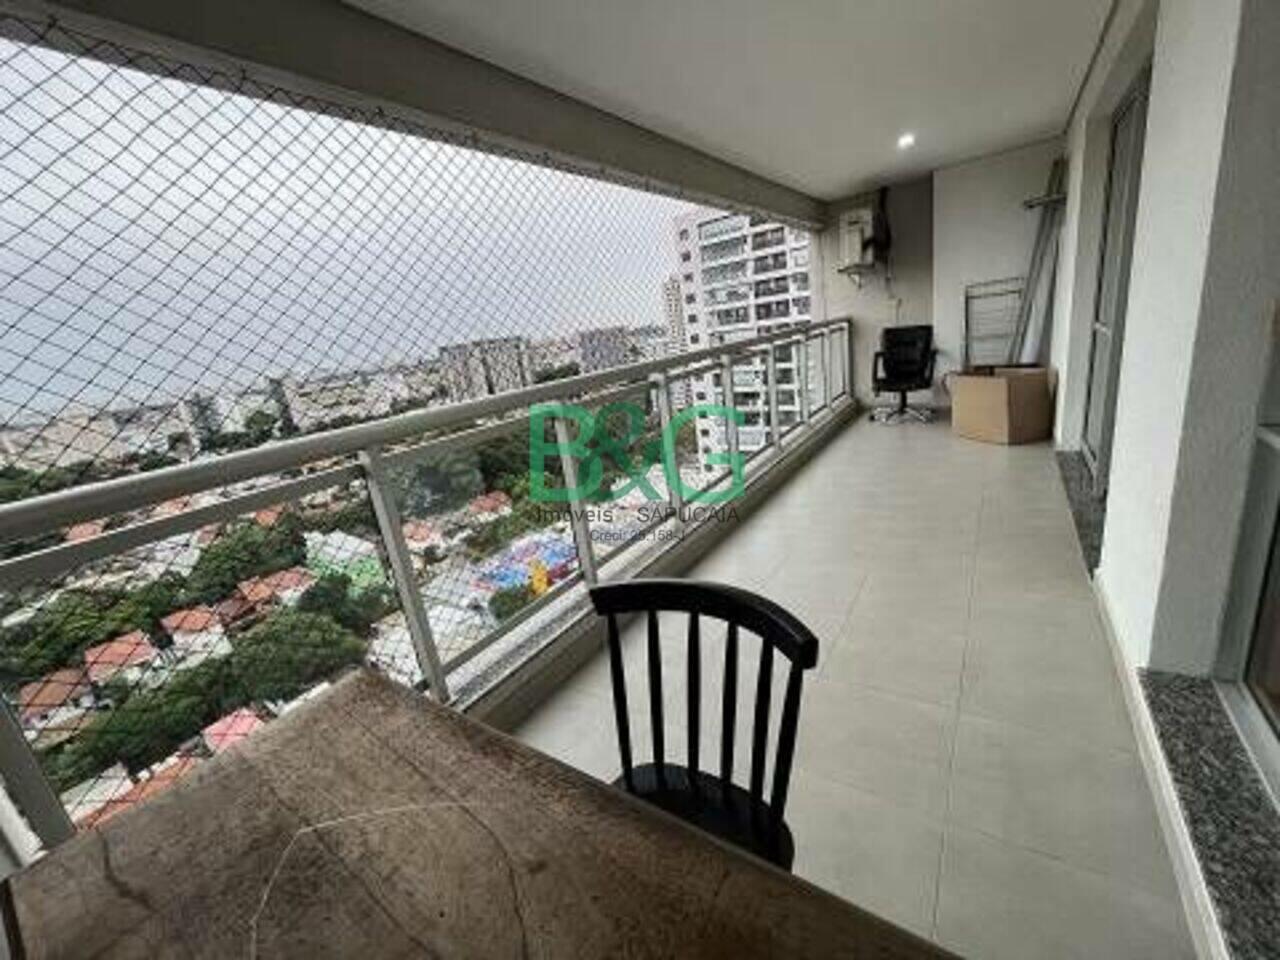 Apartamento duplex Campo Belo, São Paulo - SP